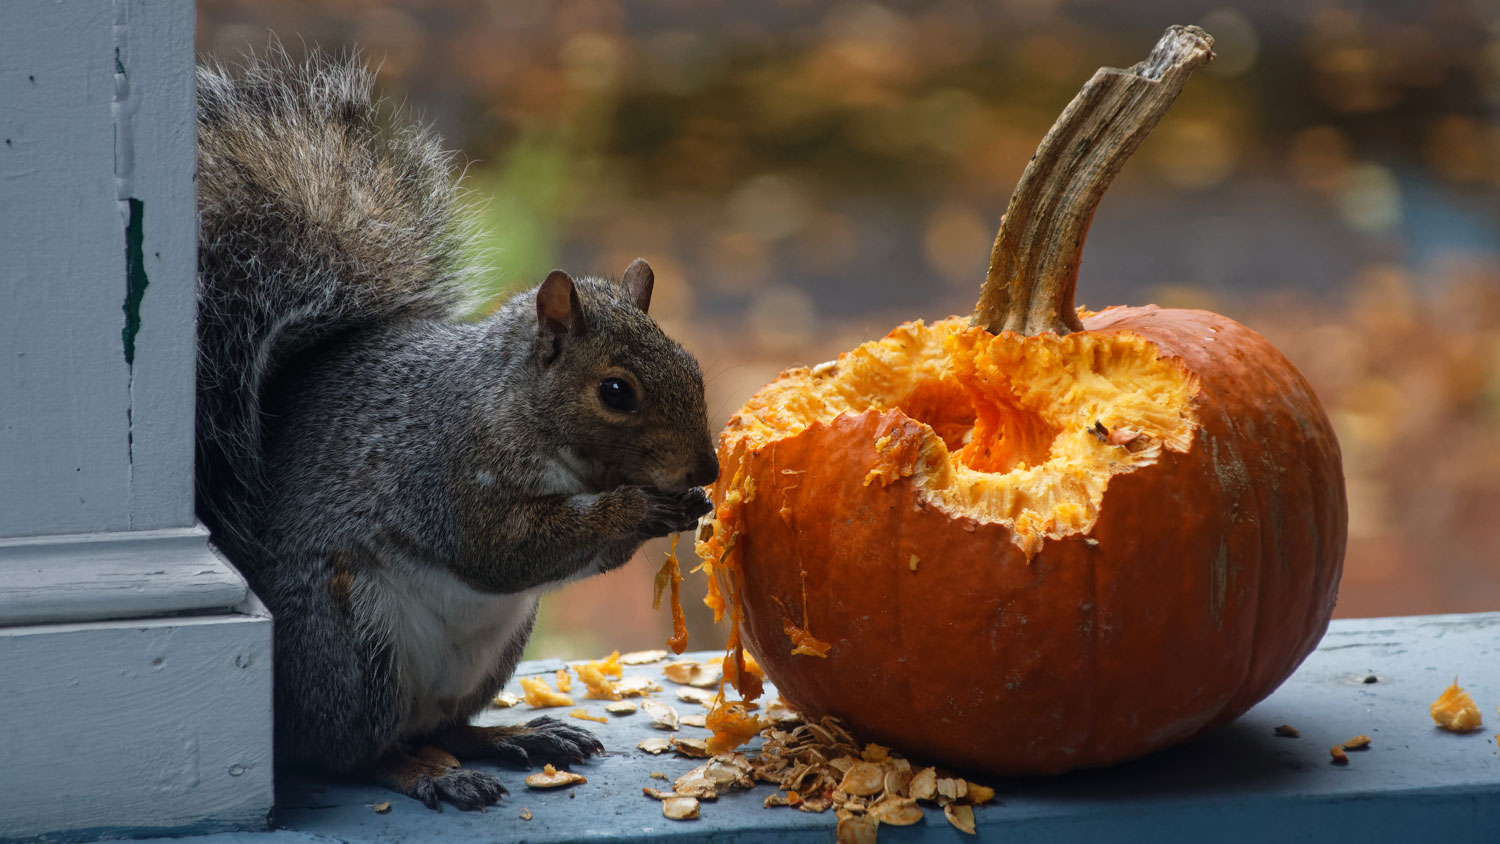 A squirrel eating a pumpkin on a porch.